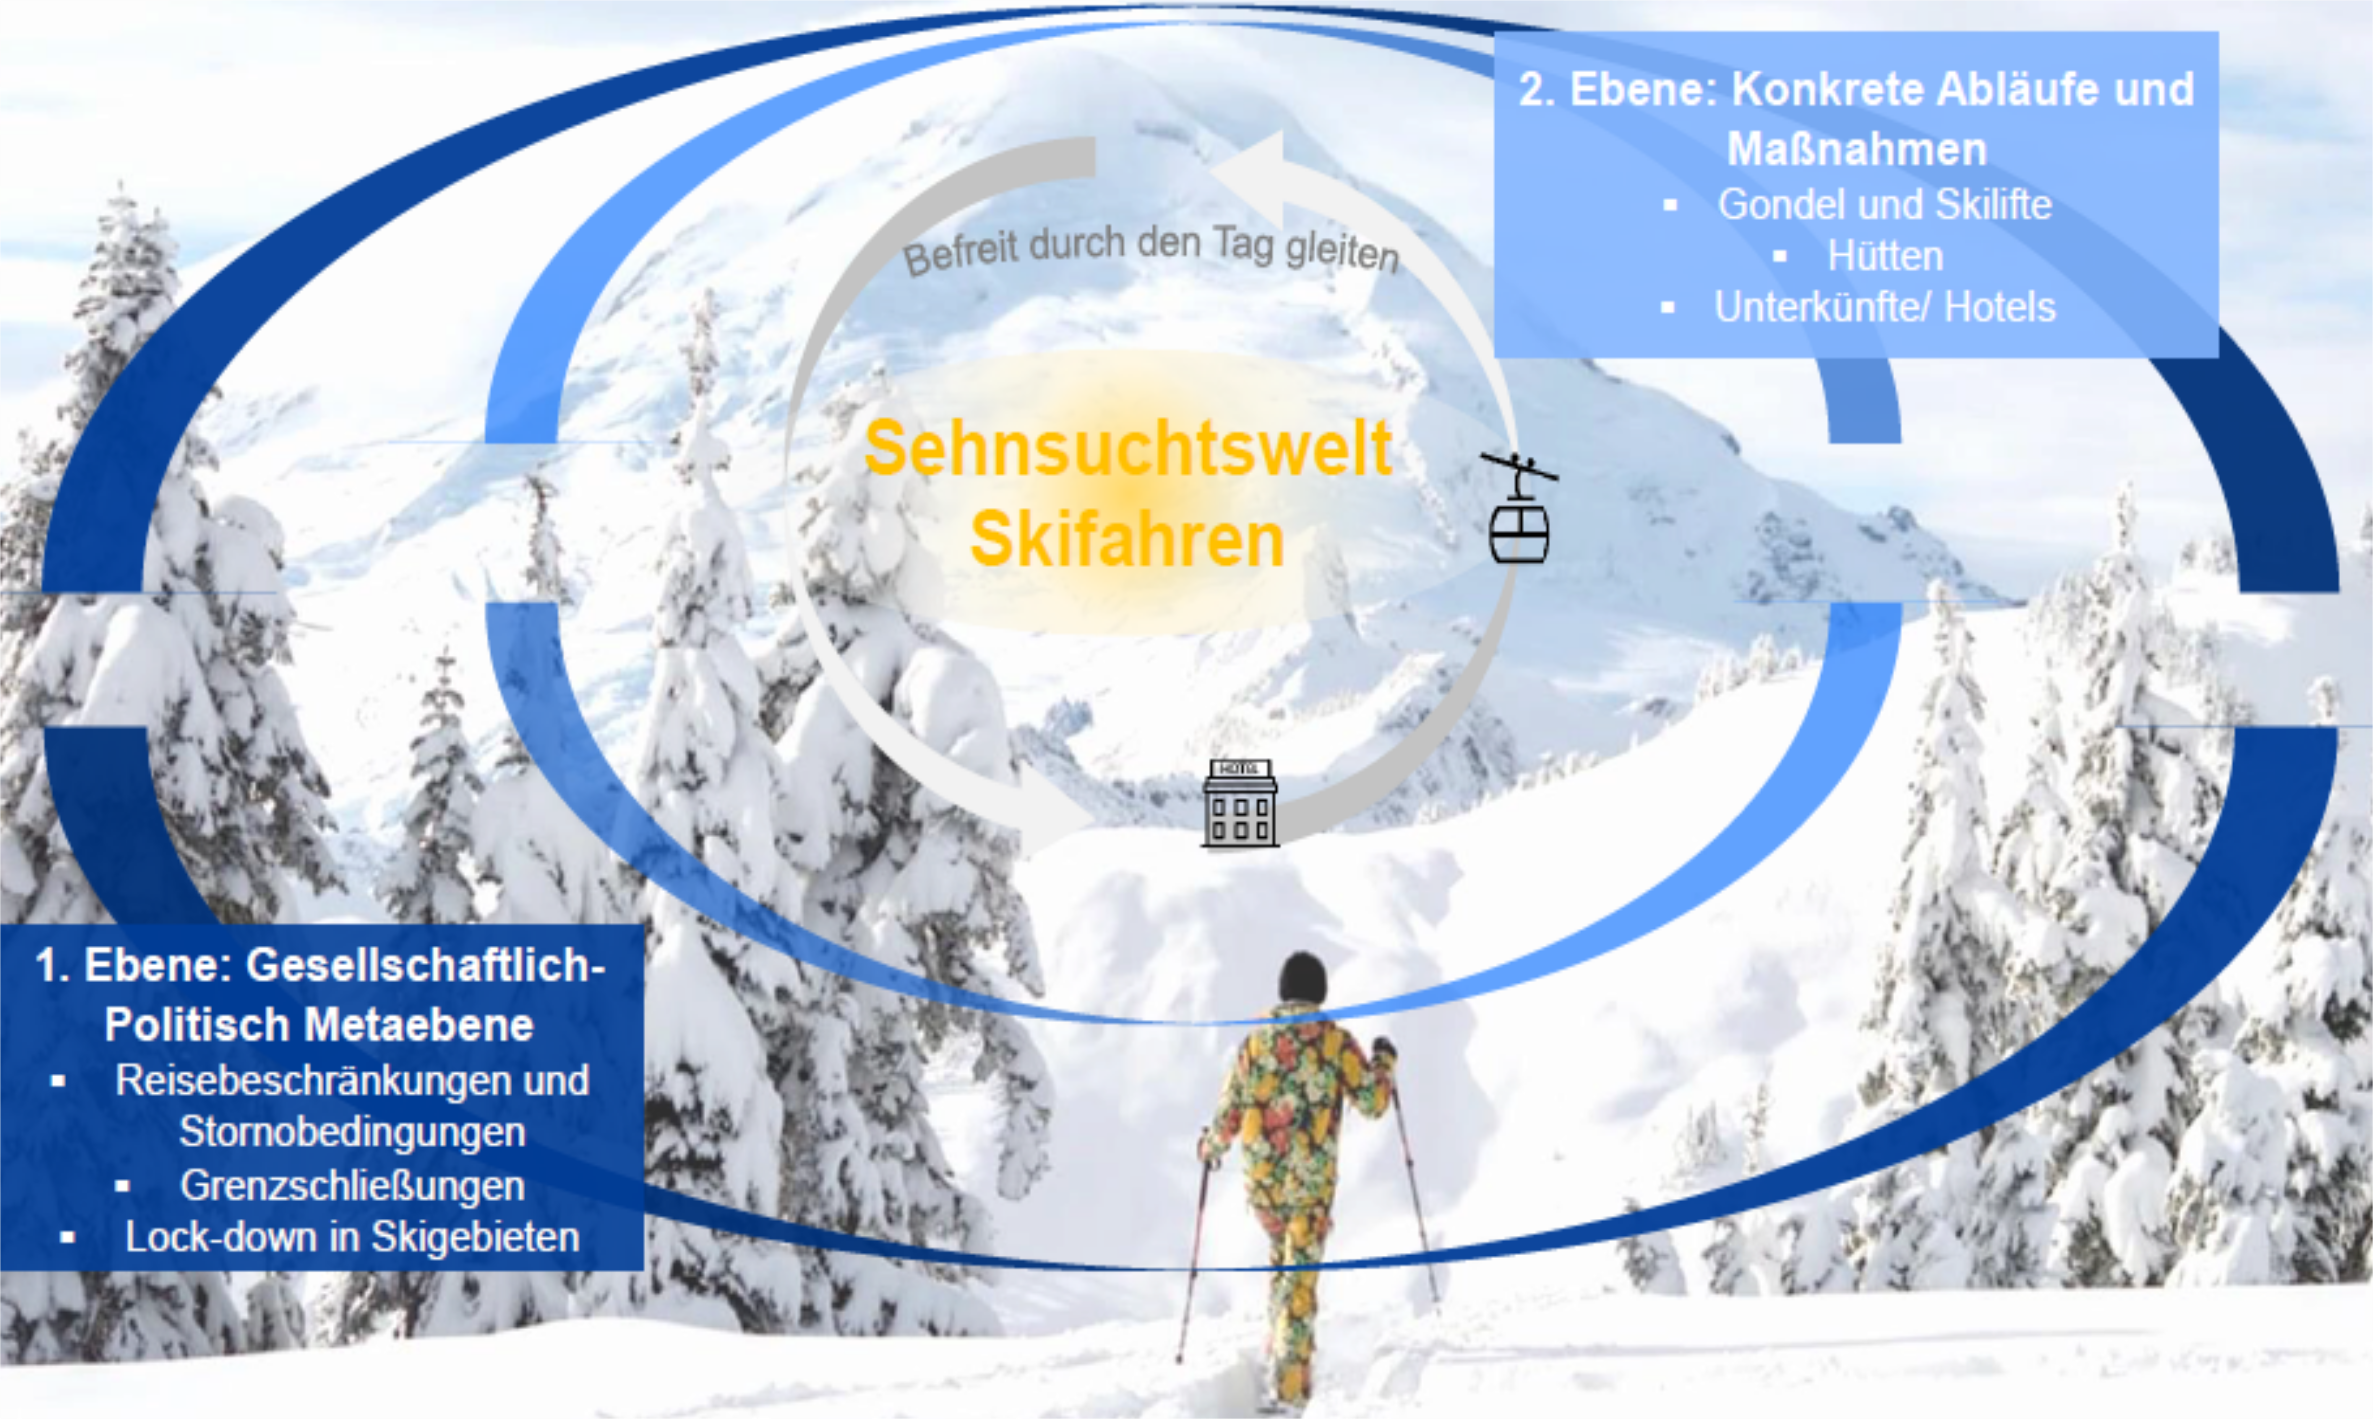 Qualitativ-psychologische Wirkungsanalyse Corona und Skiurlaub 2020/21 in Österreich  - rheingold institut & Österreich Werbung